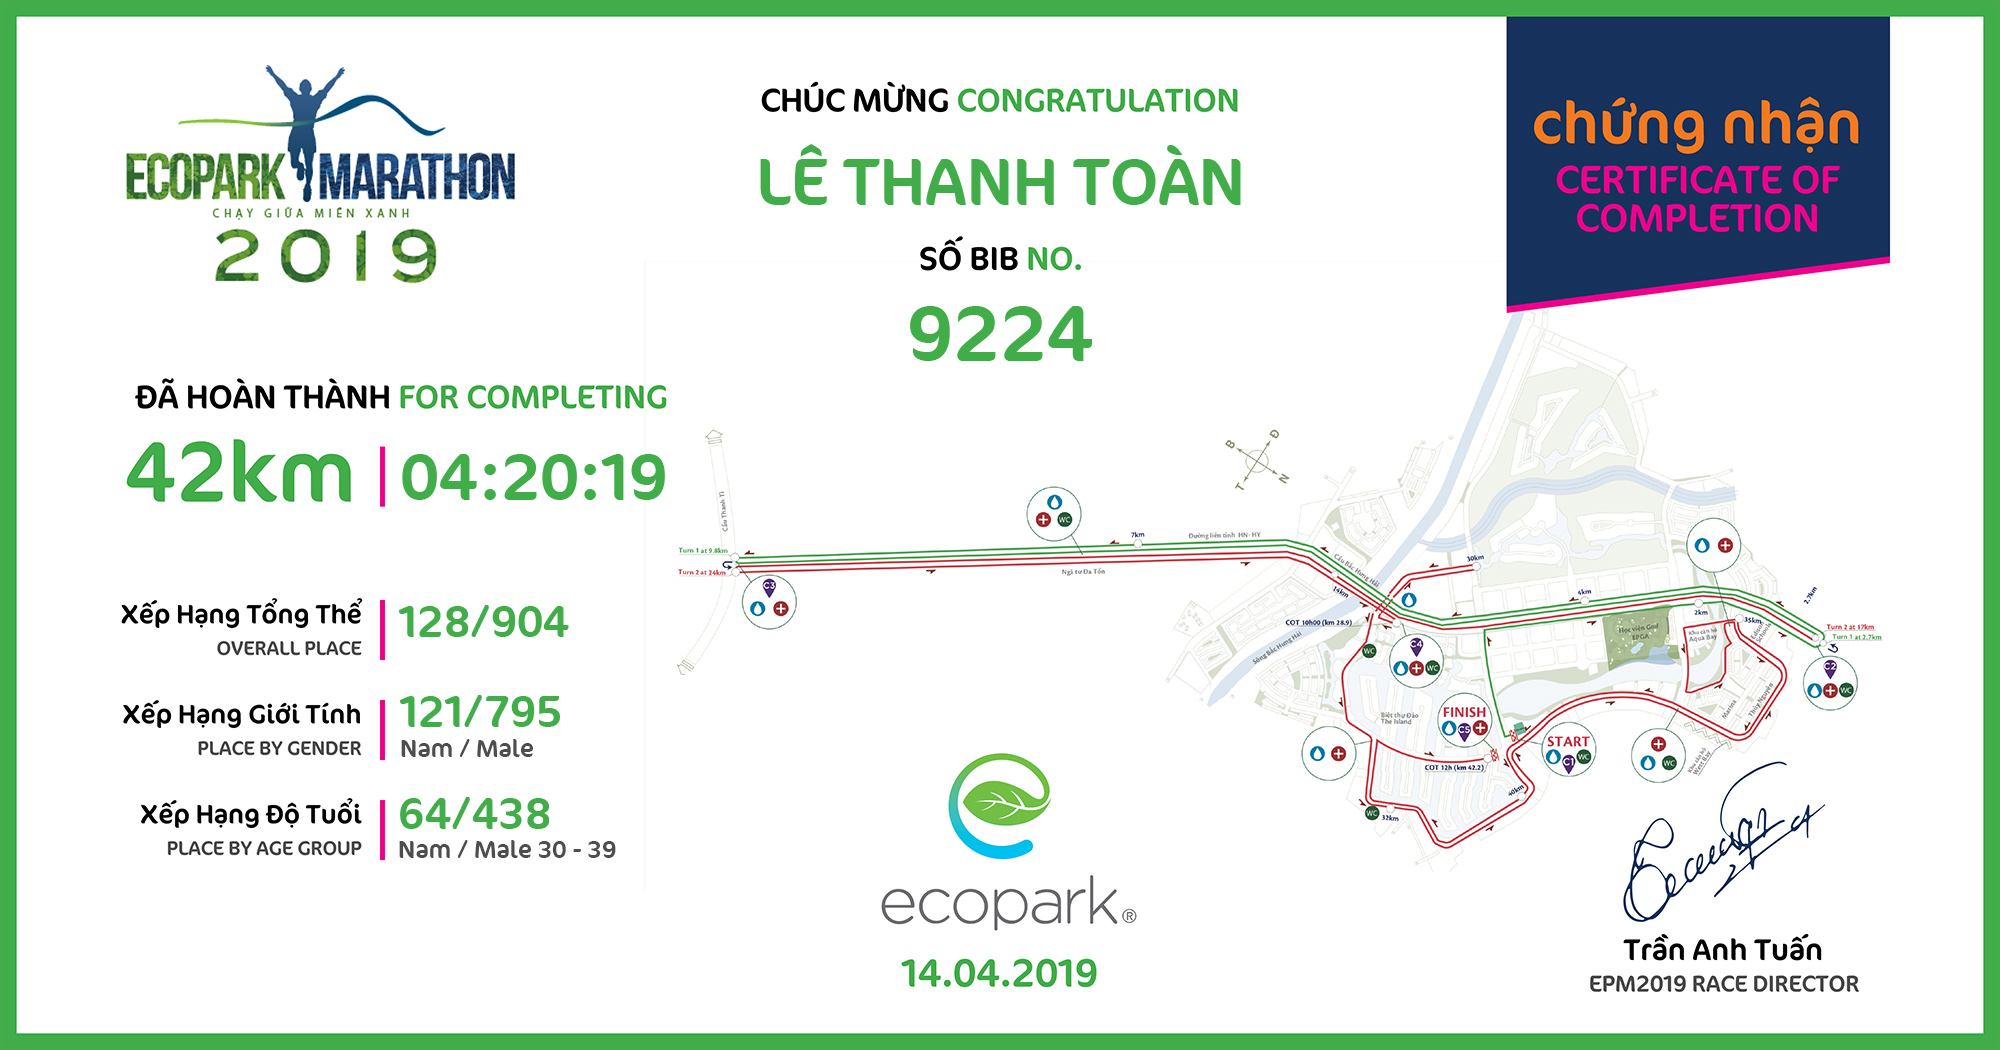 9224 - Lê Thanh Toàn